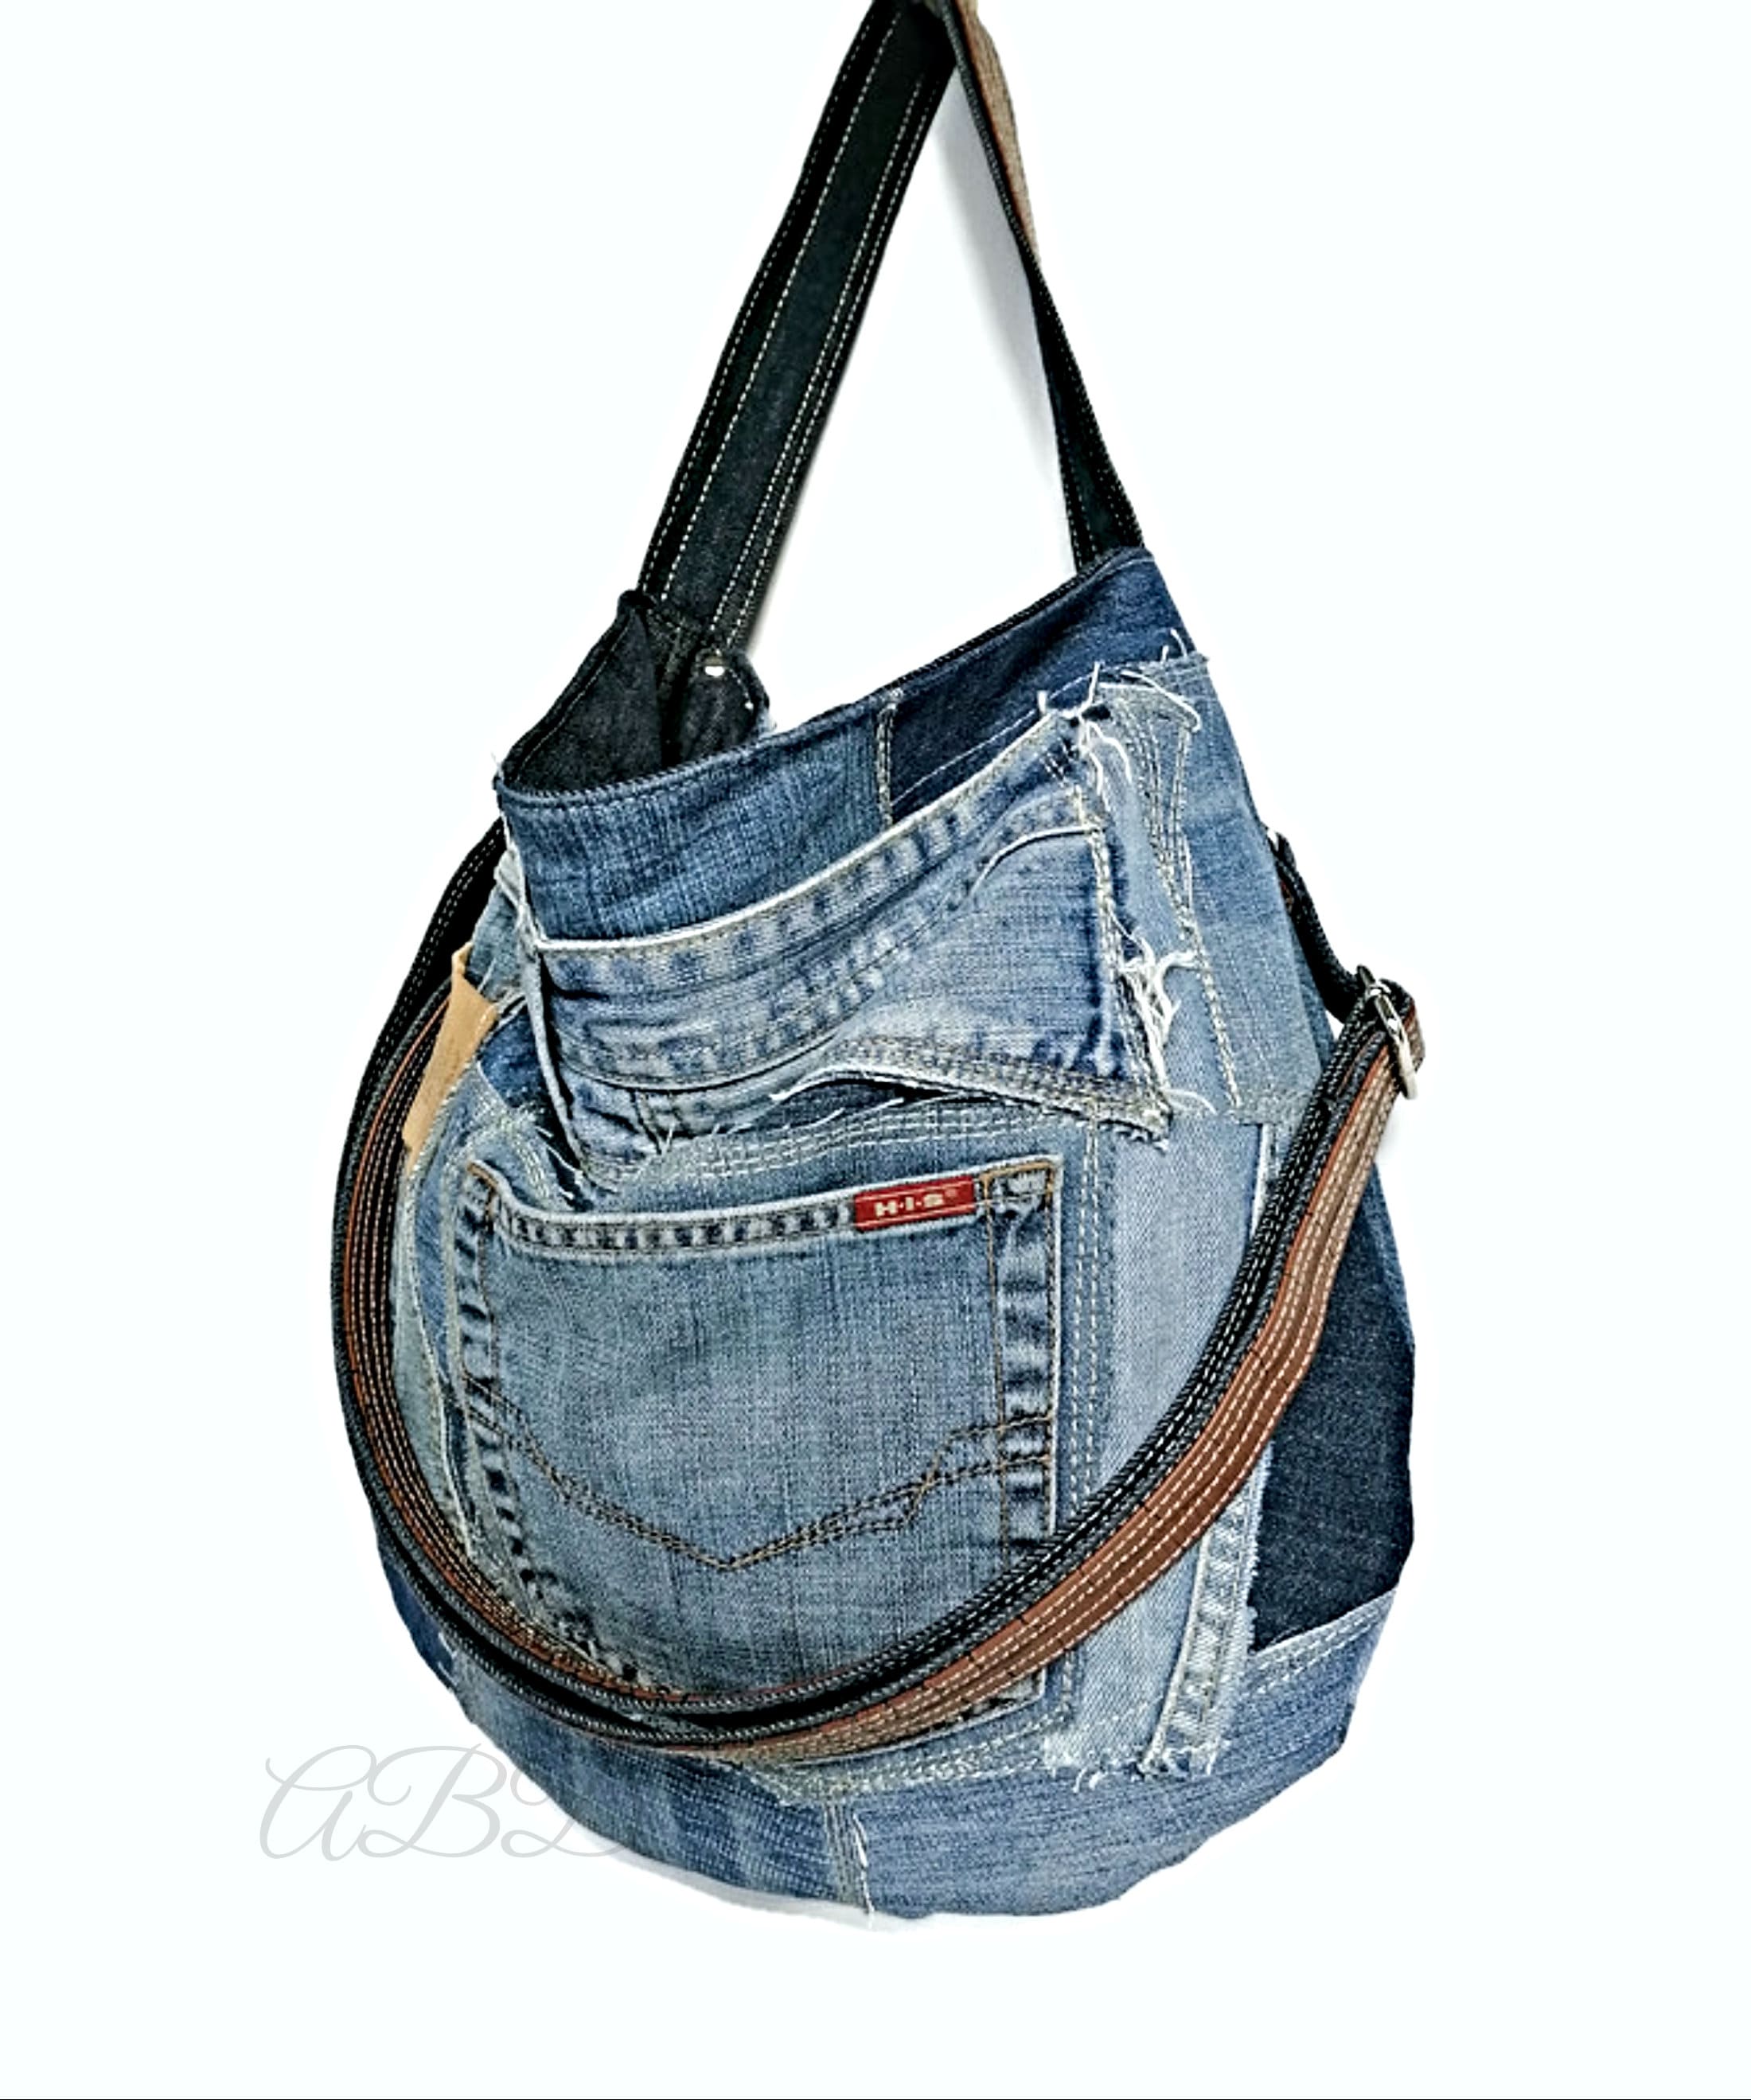 Denim Handbag Denim Purse Bag Recycled Jeans Bag Jeans Purse - Etsy